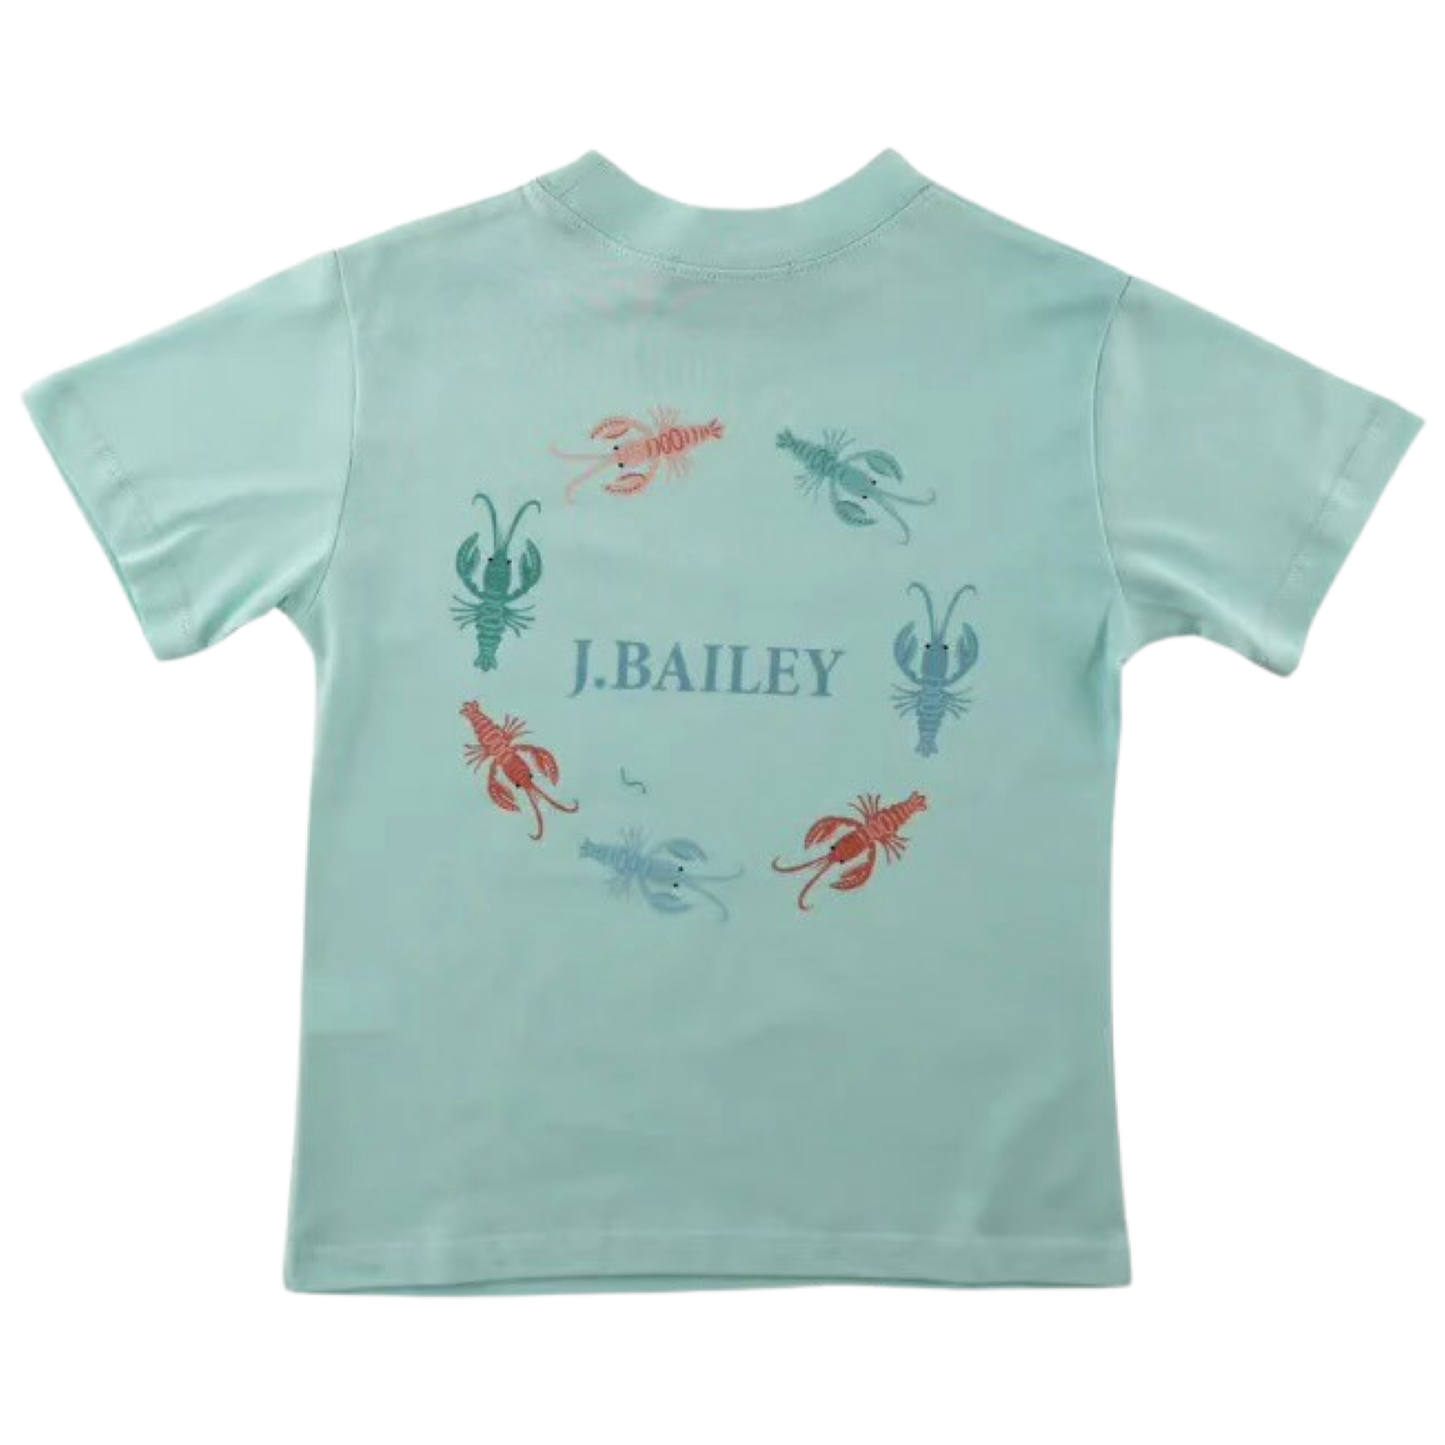 Bailey Tee - Crawfish